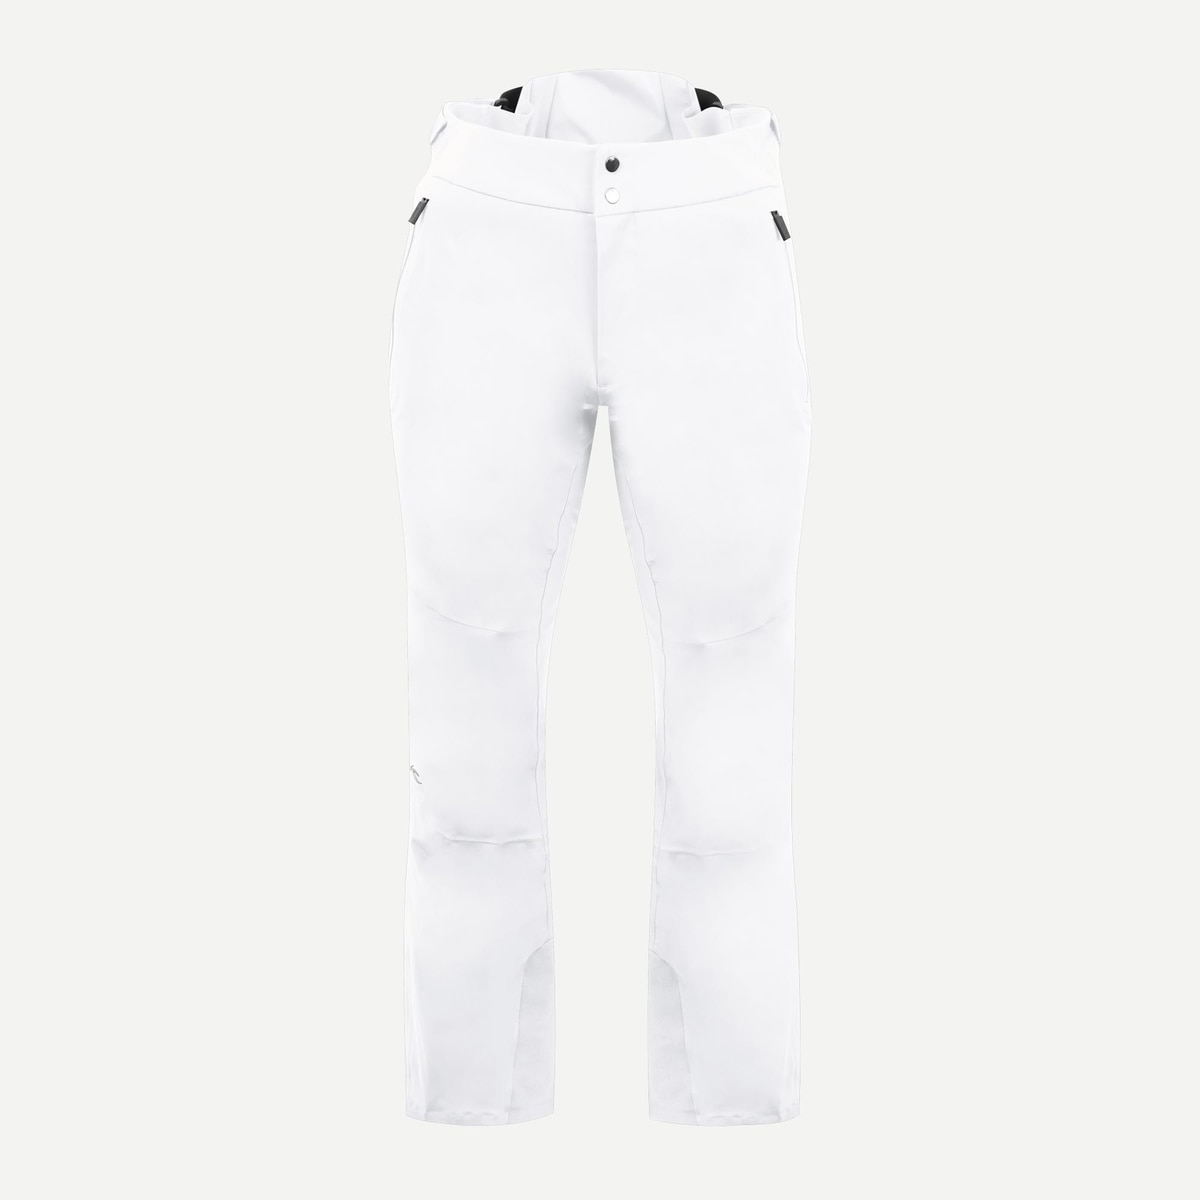 Kjus MEN FORMULA PANTS - Pantalones de esquí - pewter/gris 